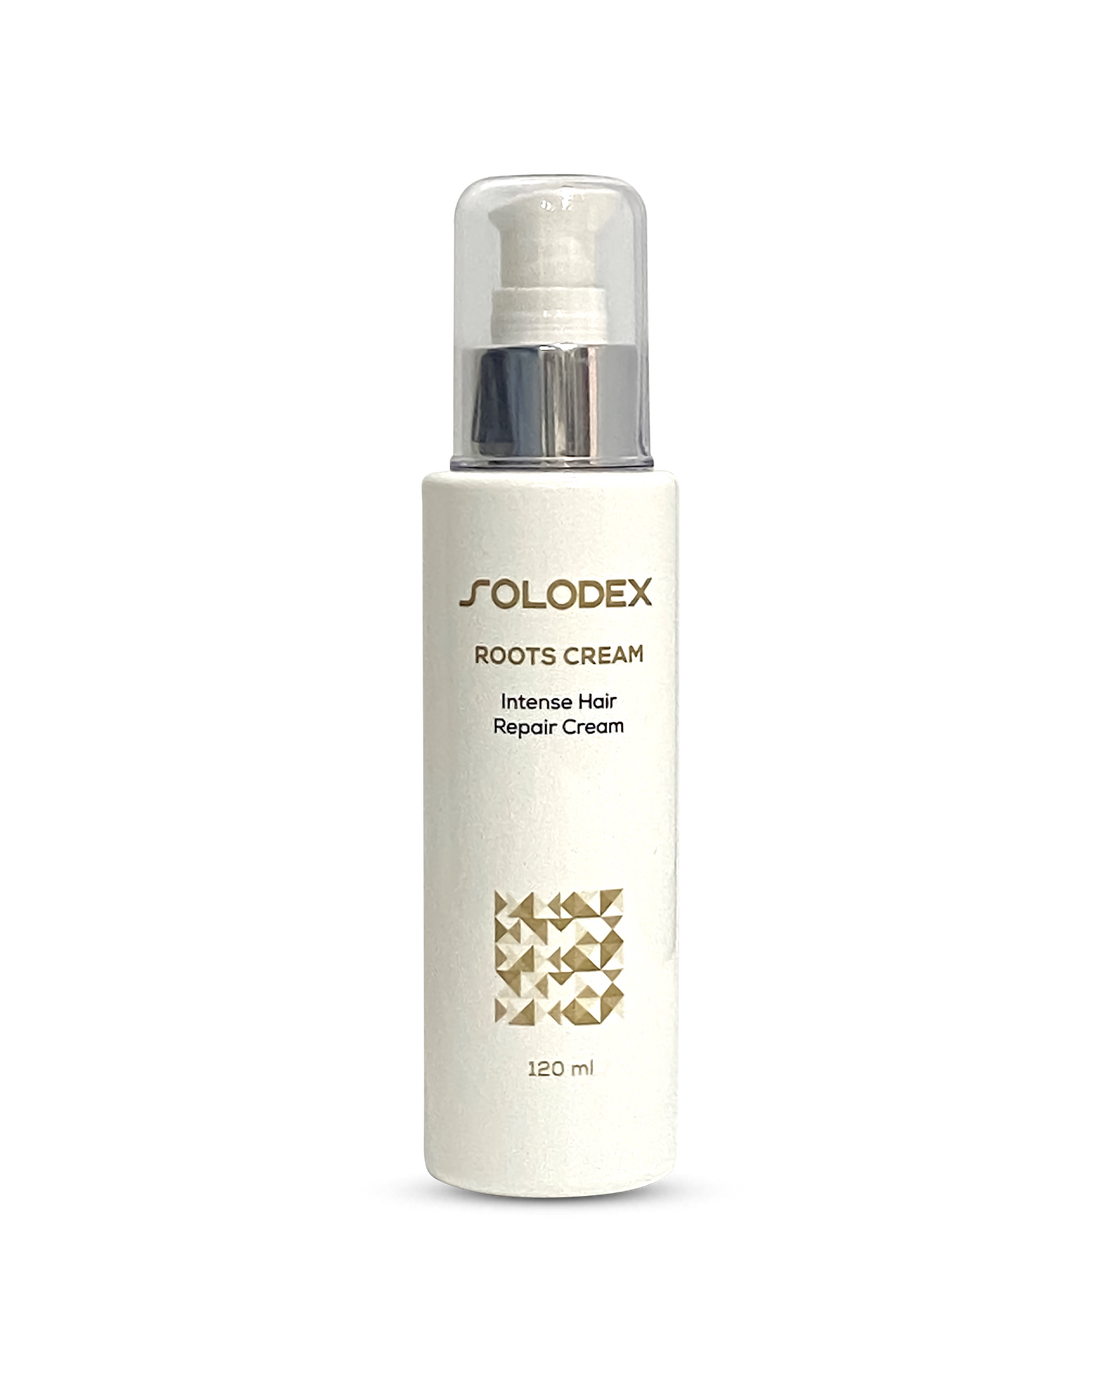 SOLODEX Roots (Intense Hair Repair Cream)